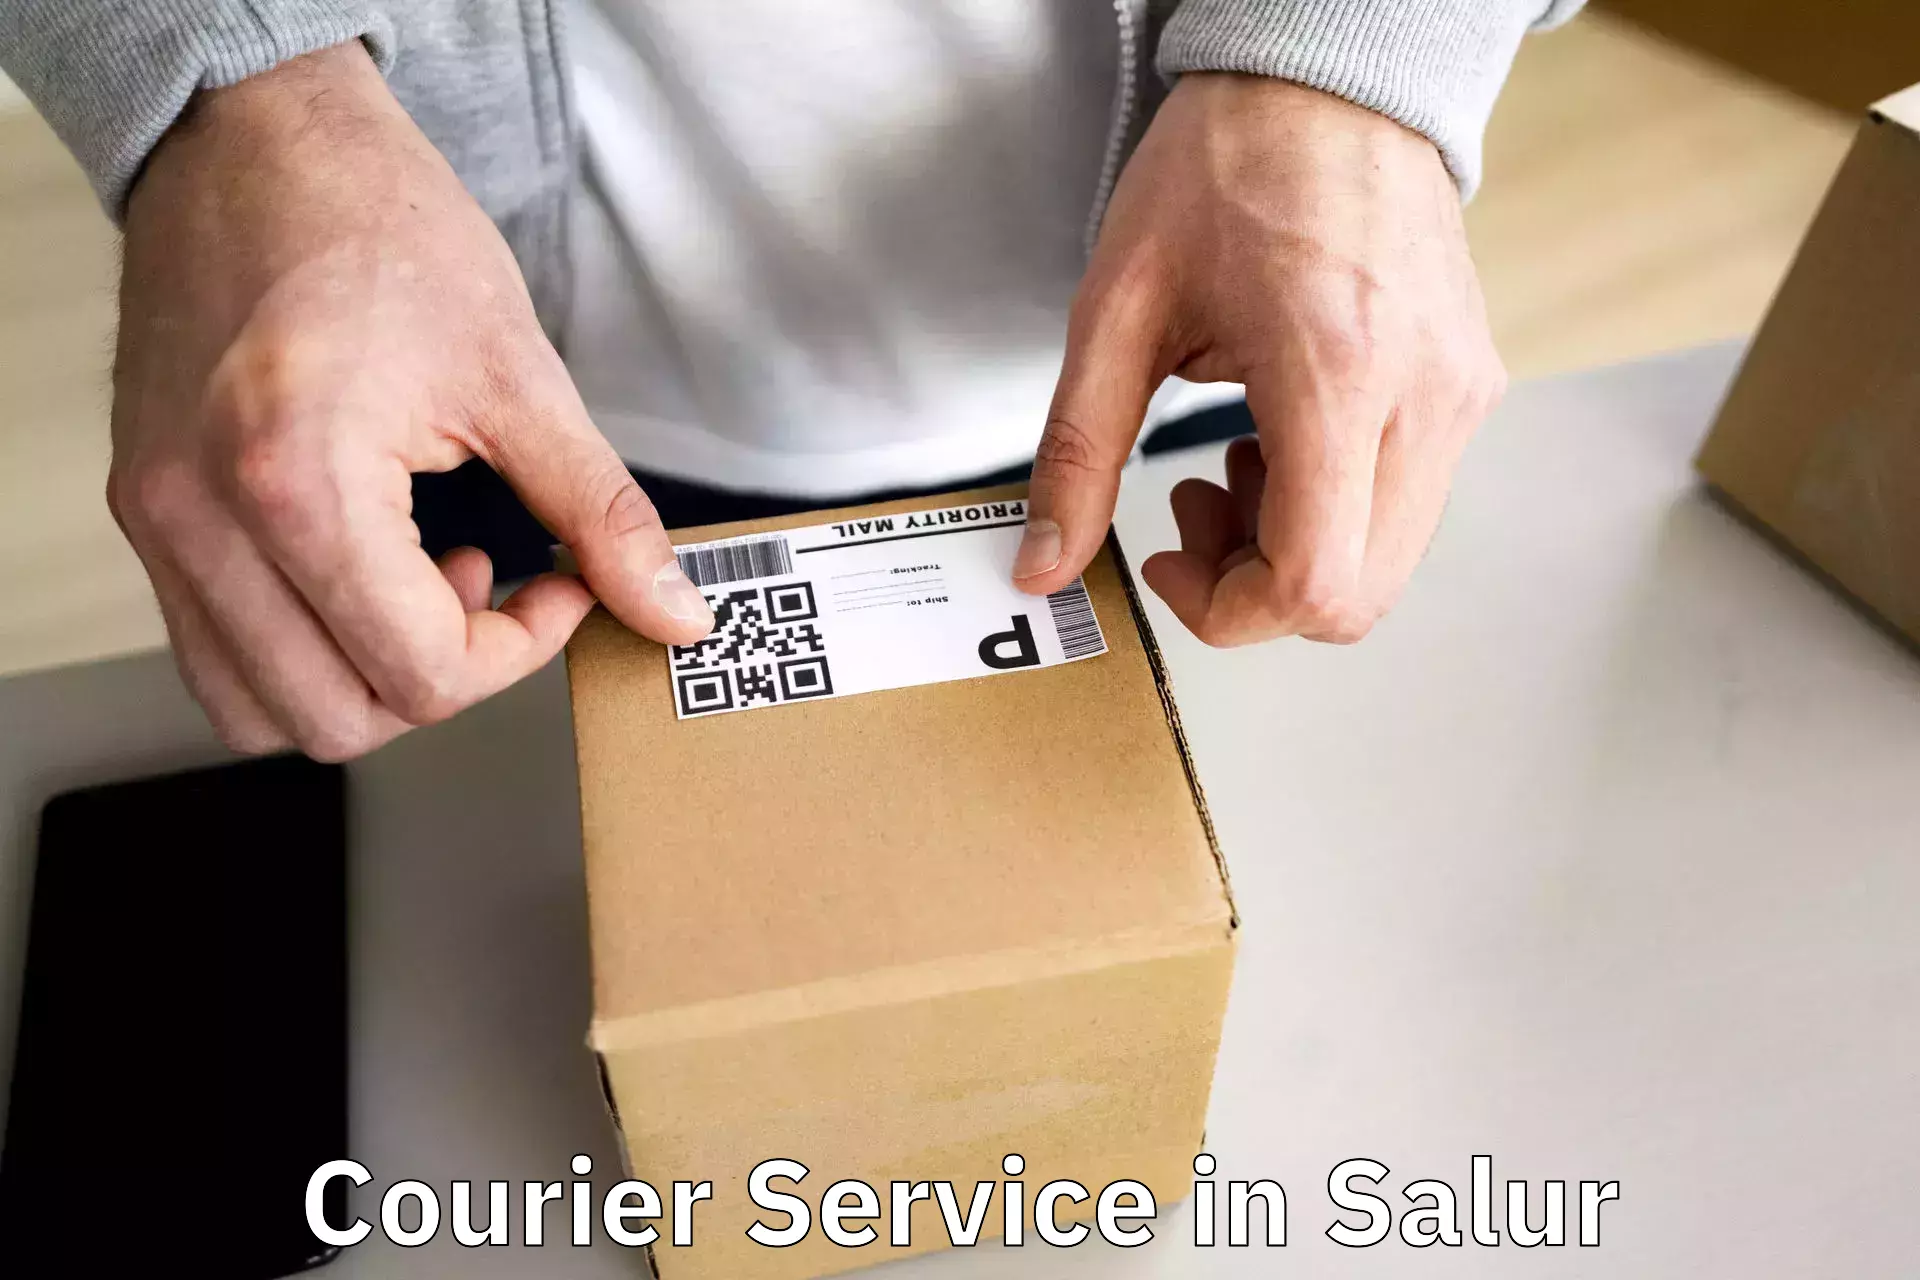 Efficient parcel service in Salur